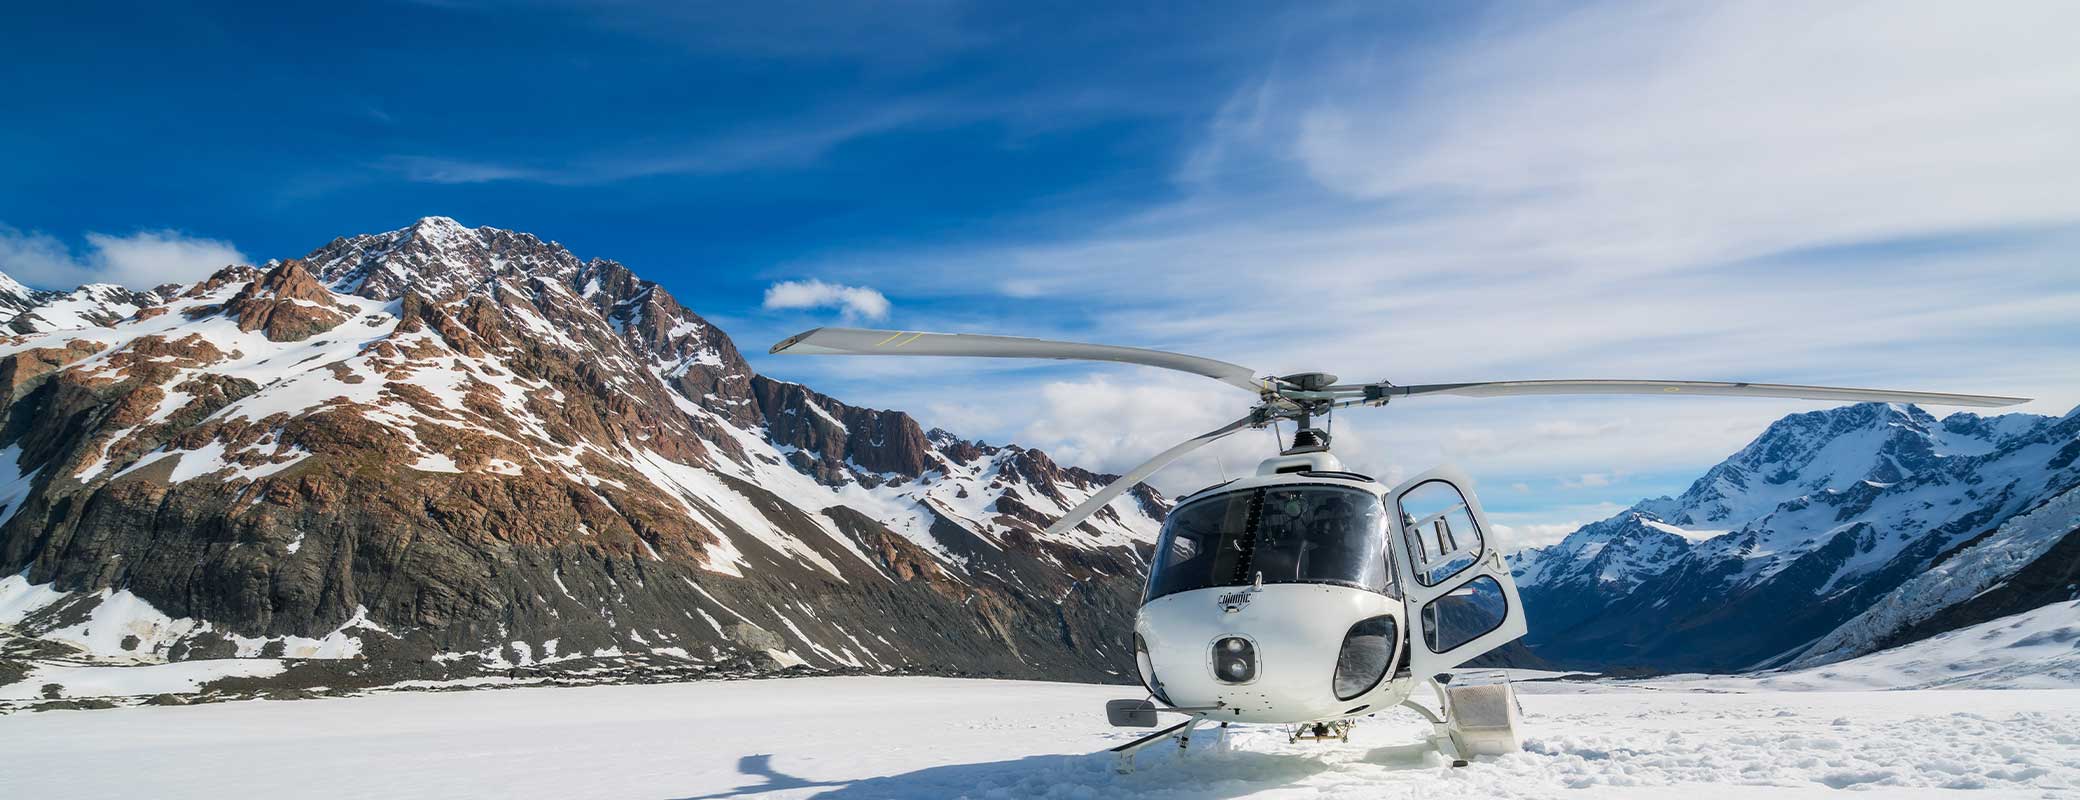 Manuel Neuers Ski-Unfall: Darf mir mein Arbeitgeber gefährliche Sportarten verbieten?